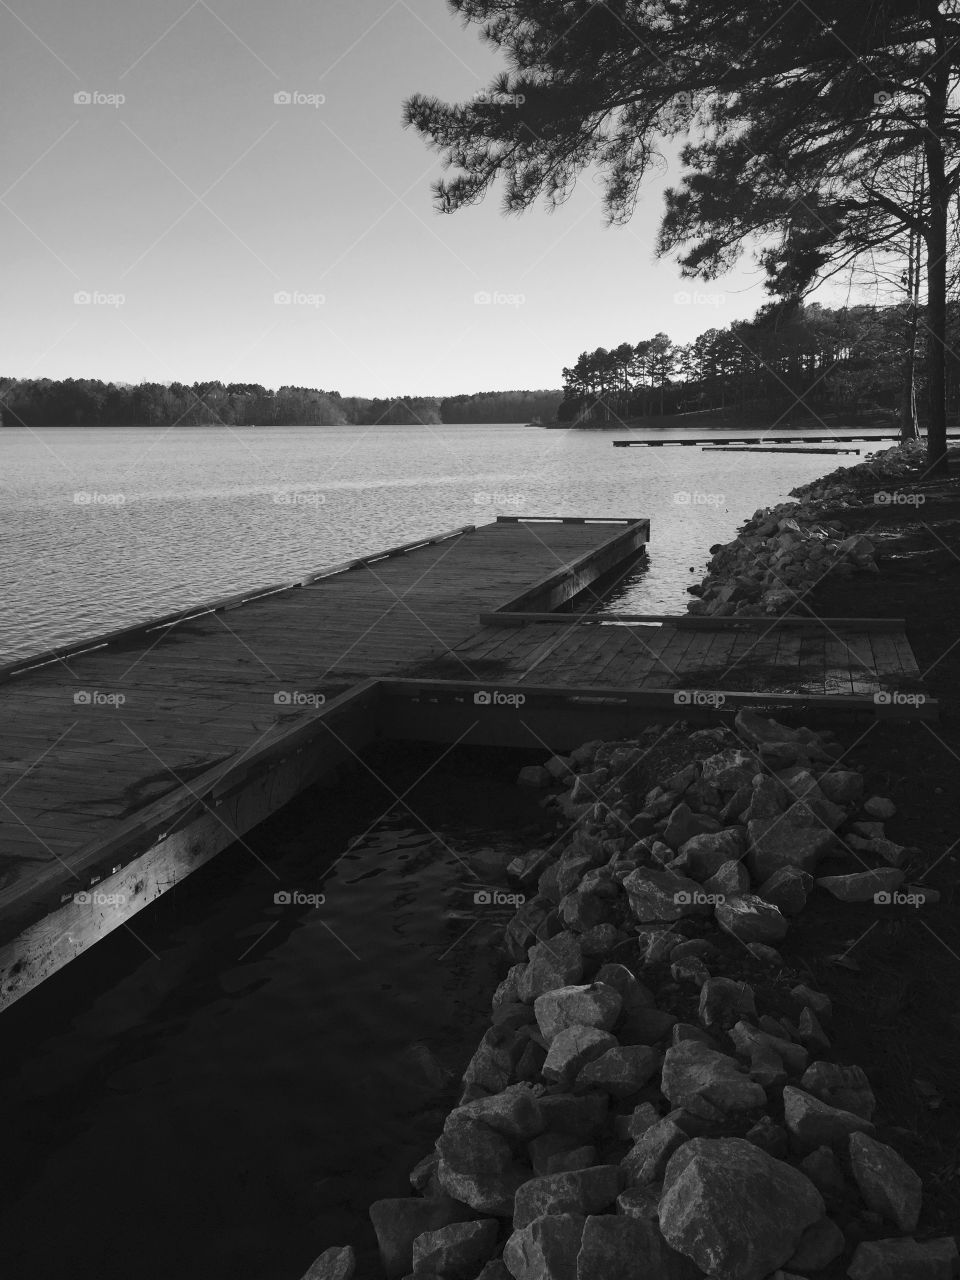 Small dock at the lake!